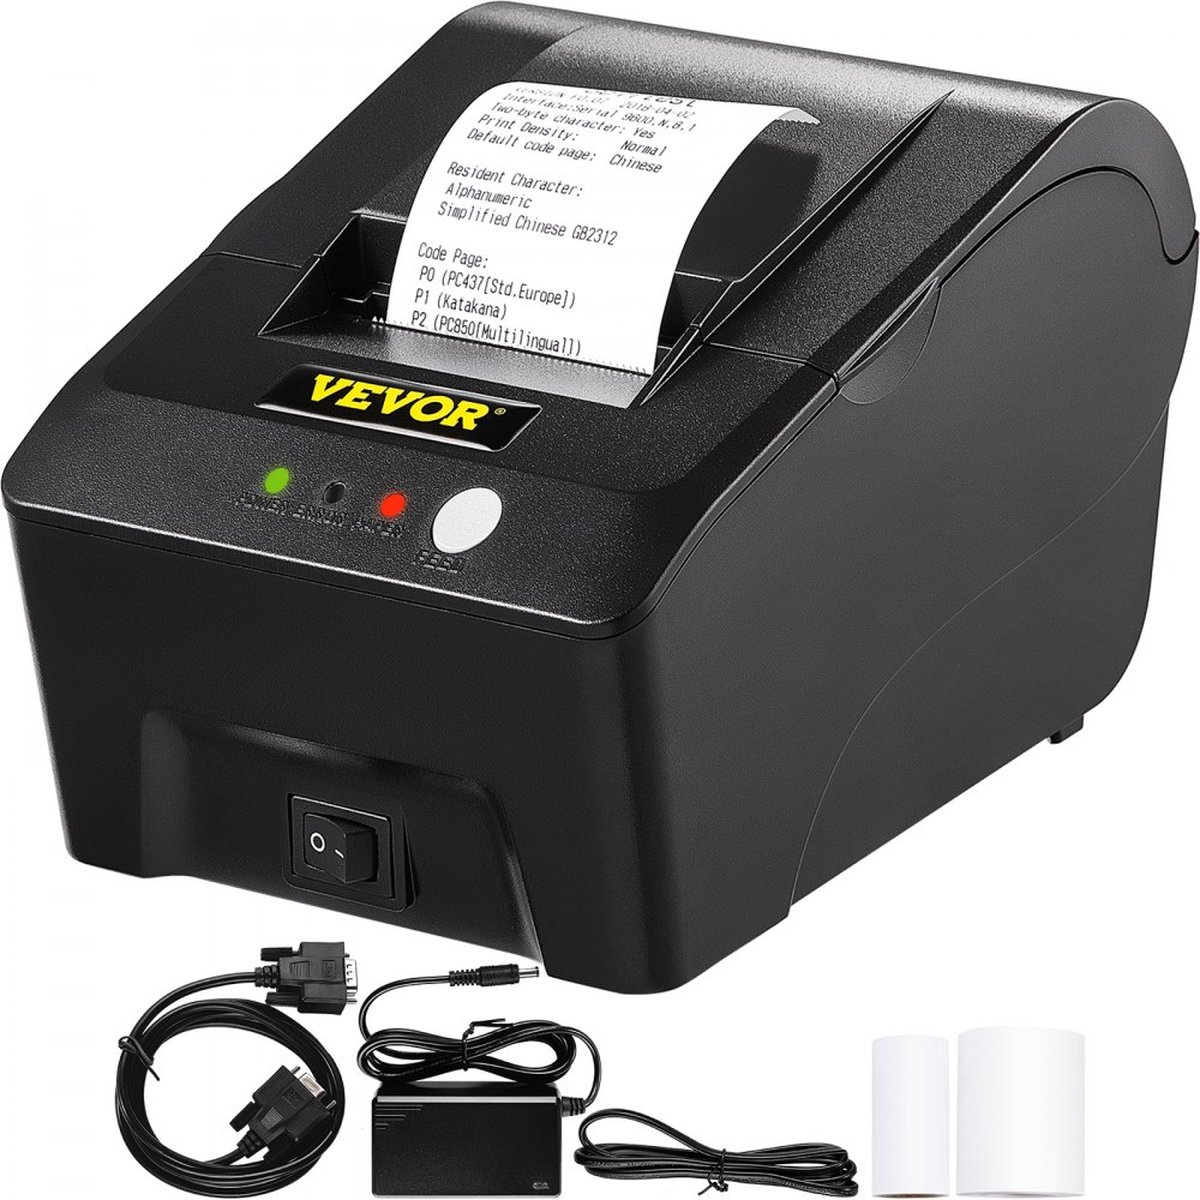 Dakta® Thermische Pos Printer 58mm Bonprinter 193x136x122mm Thermische Bonprinter Gemaakt van Duurzaam ABS met 90 mm/s Afdruksnelheid voor Telecommunicatiekosten het Afdrukken van Afhaalmaaltijden